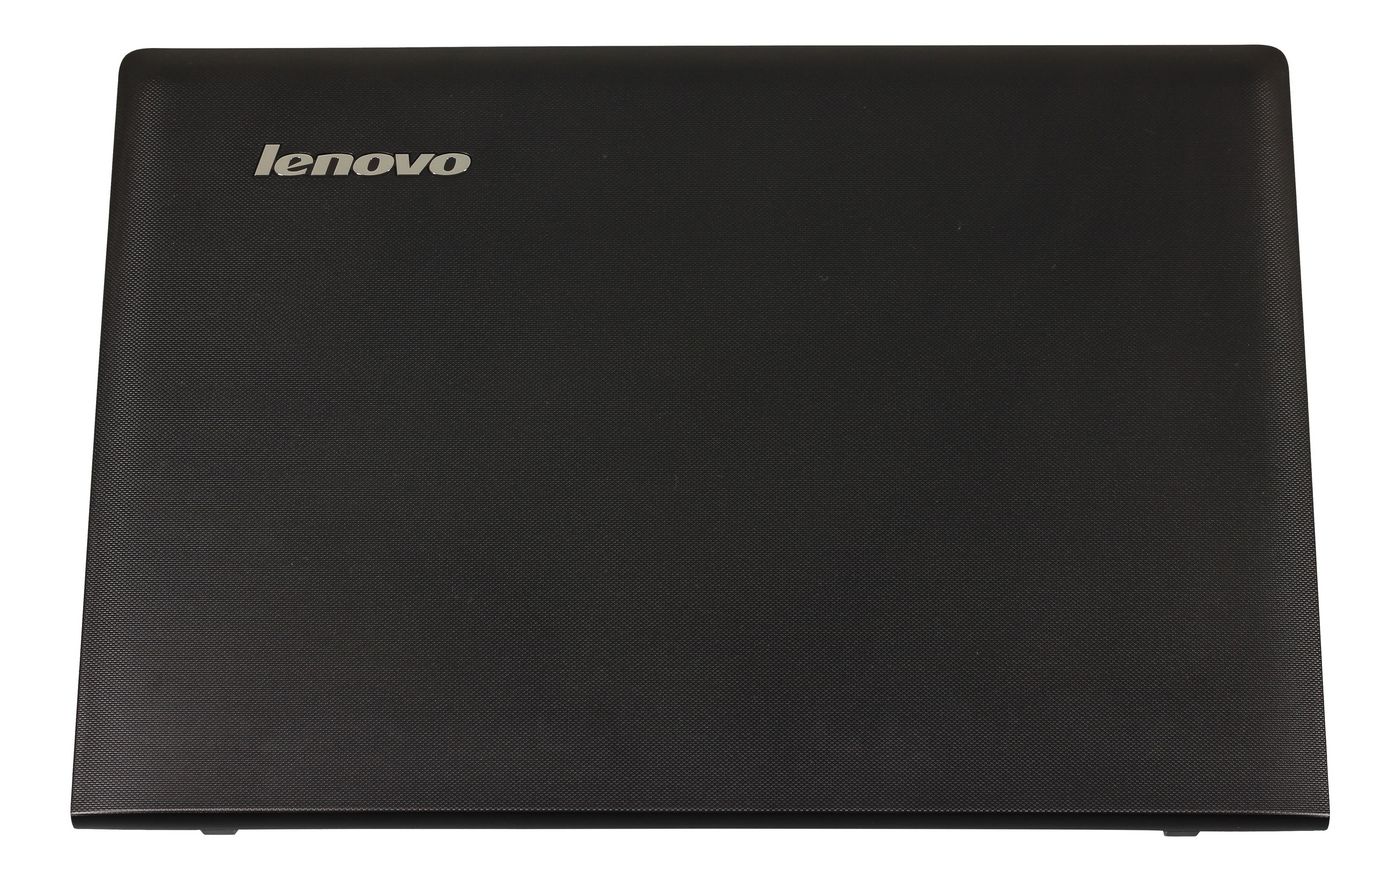 Lenovo 90205213 LCD Cover wAntenna 